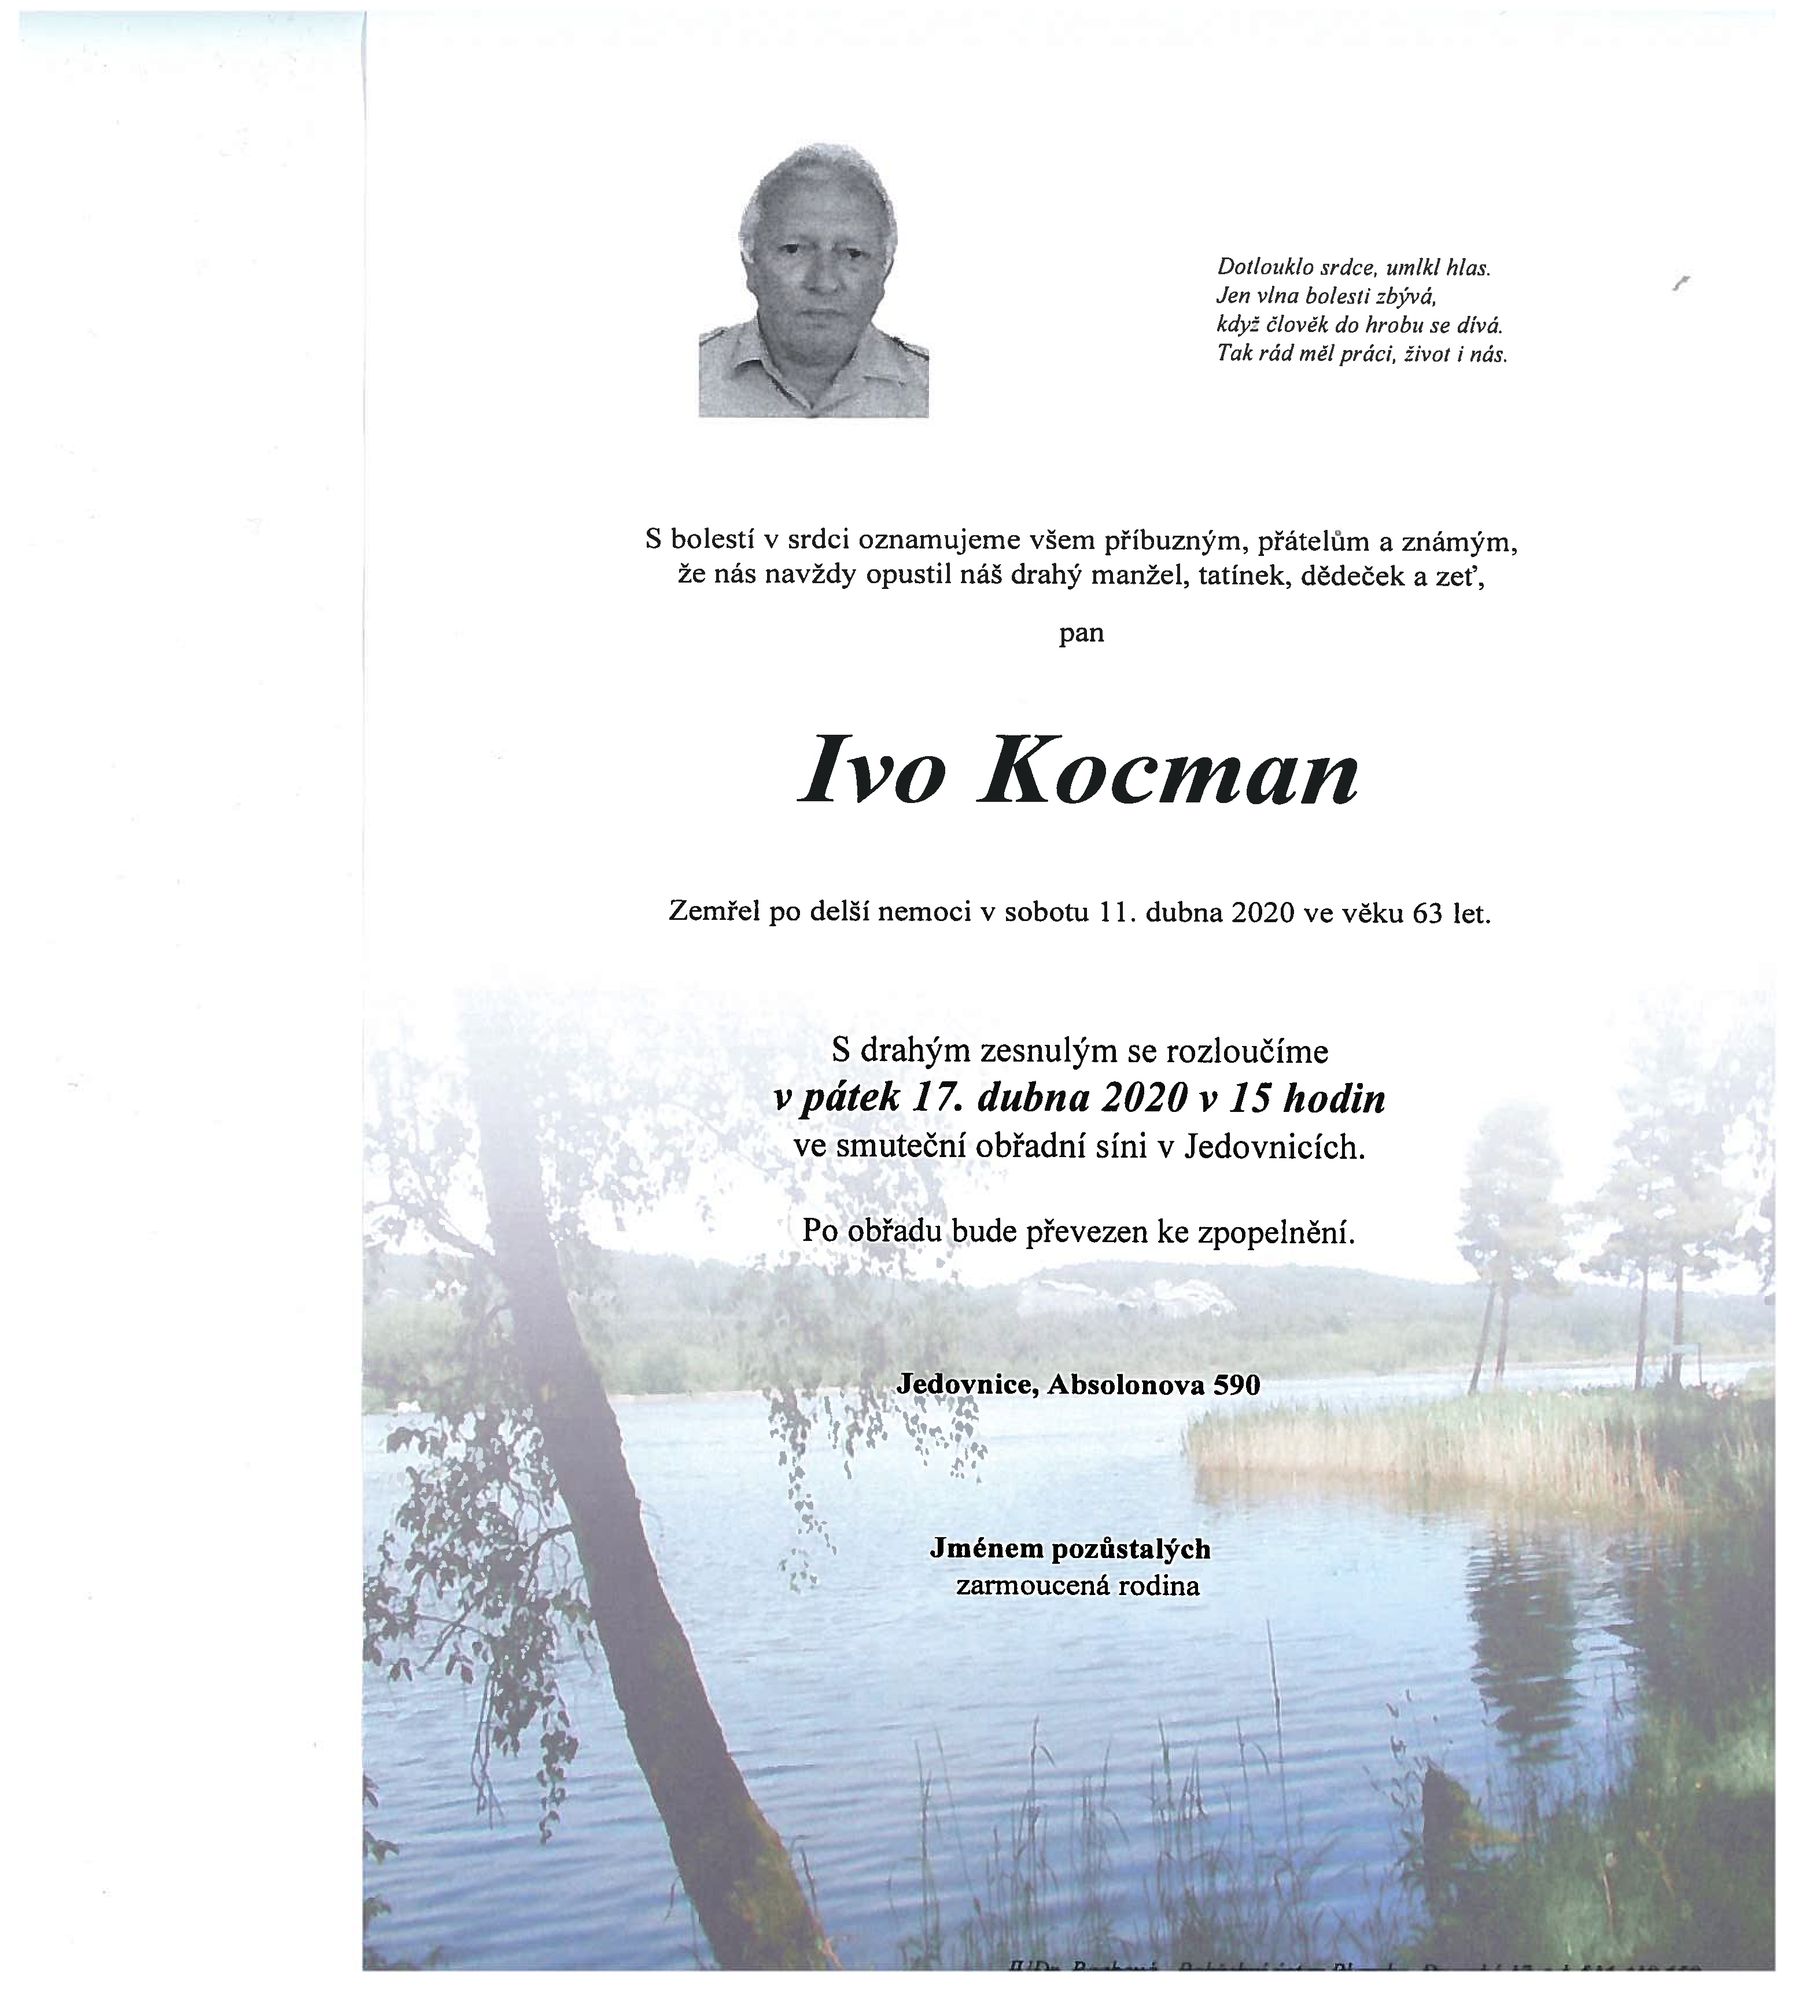 Ivo Kocman